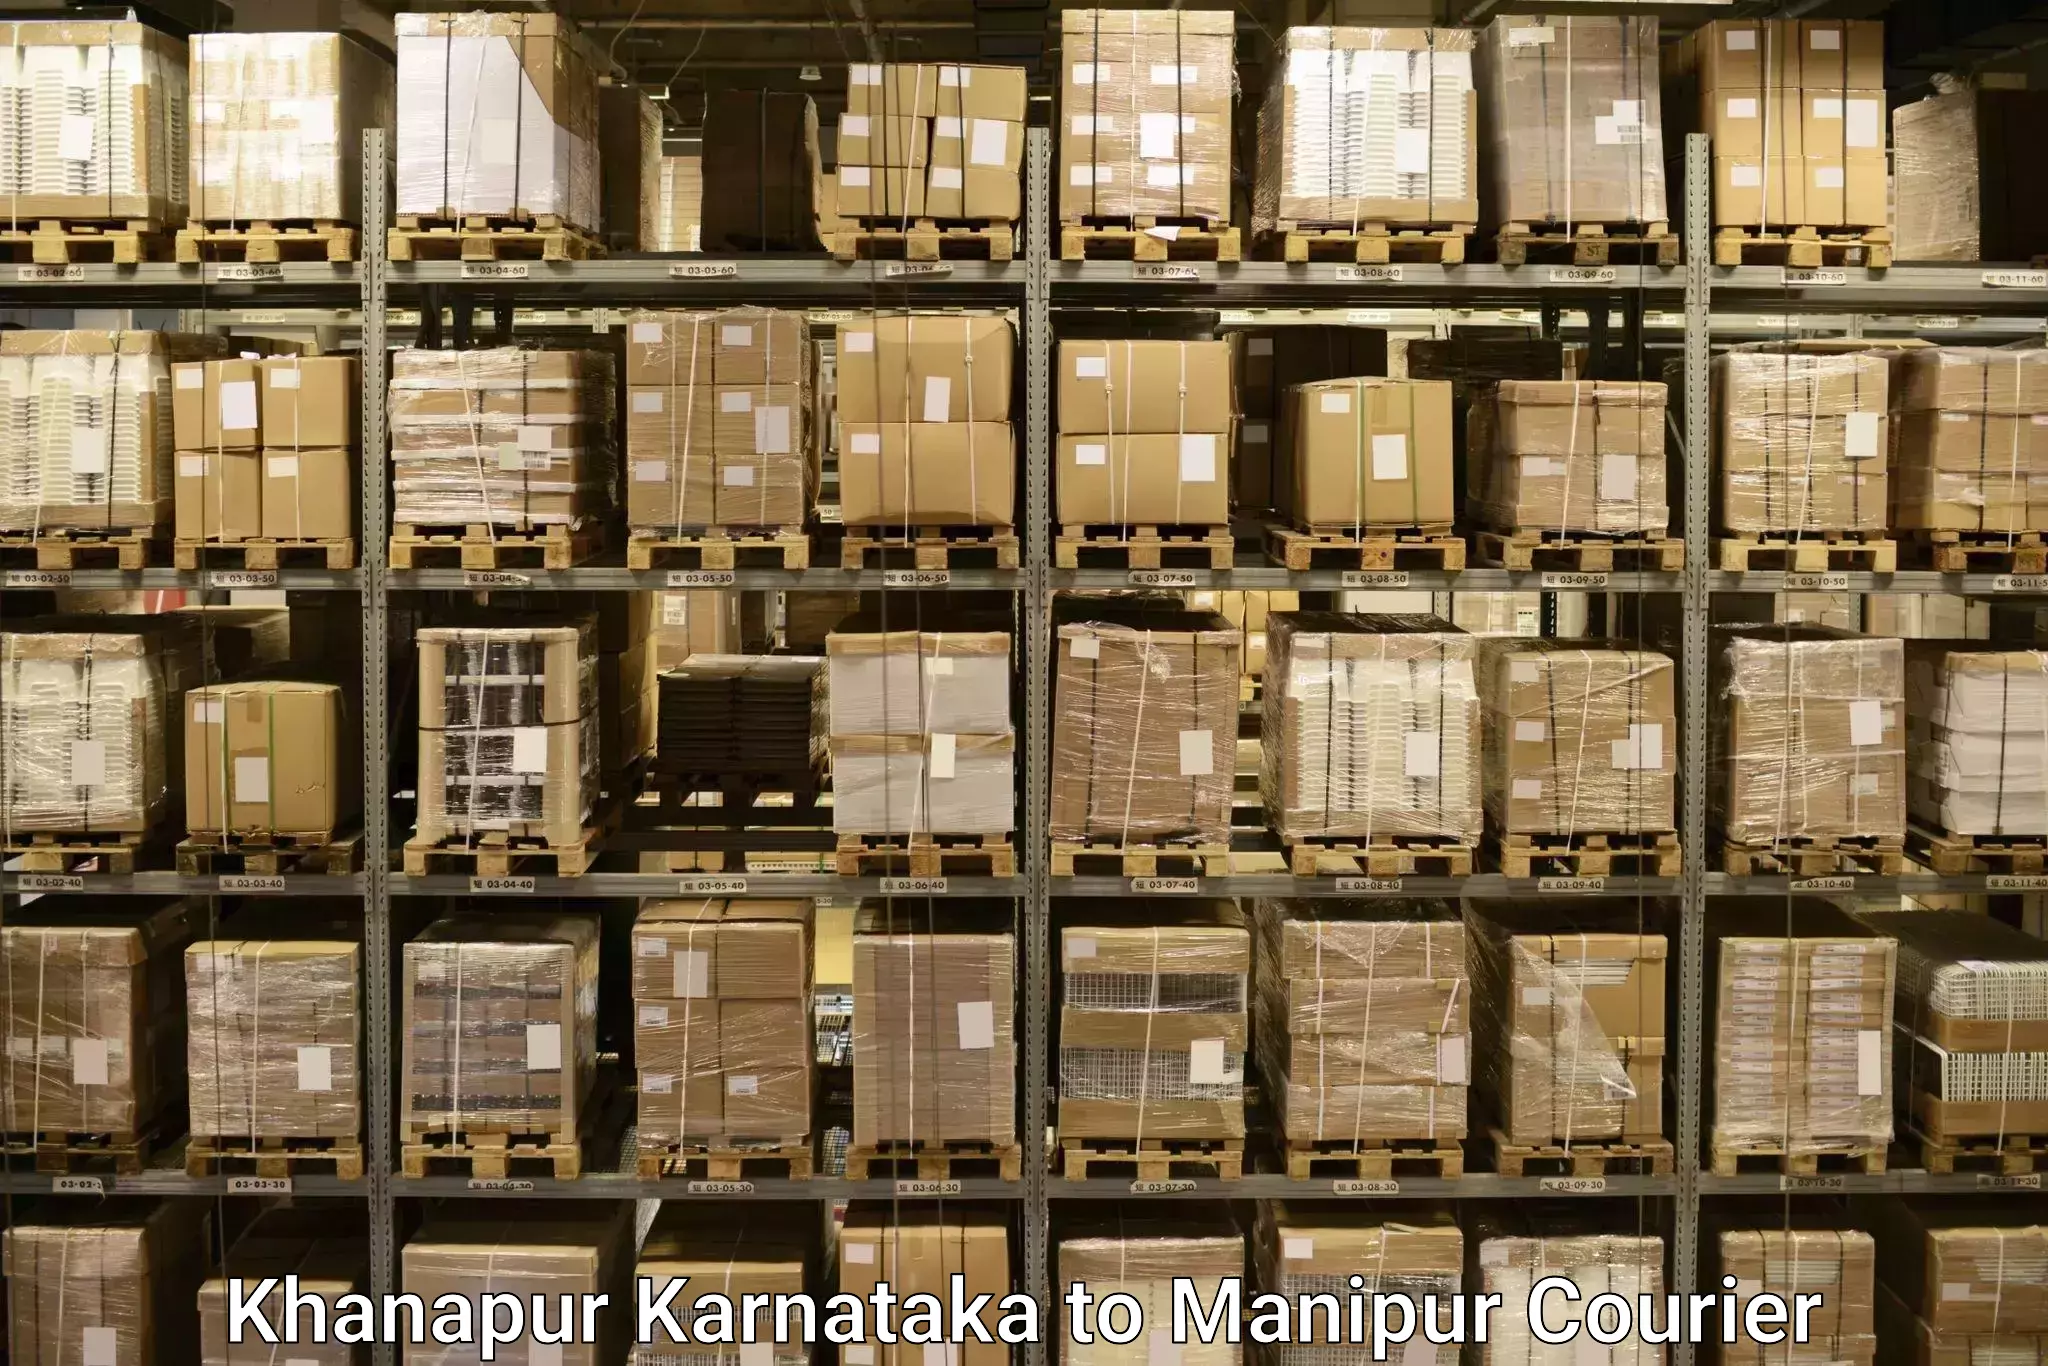 Luggage transfer service Khanapur Karnataka to Jiribam